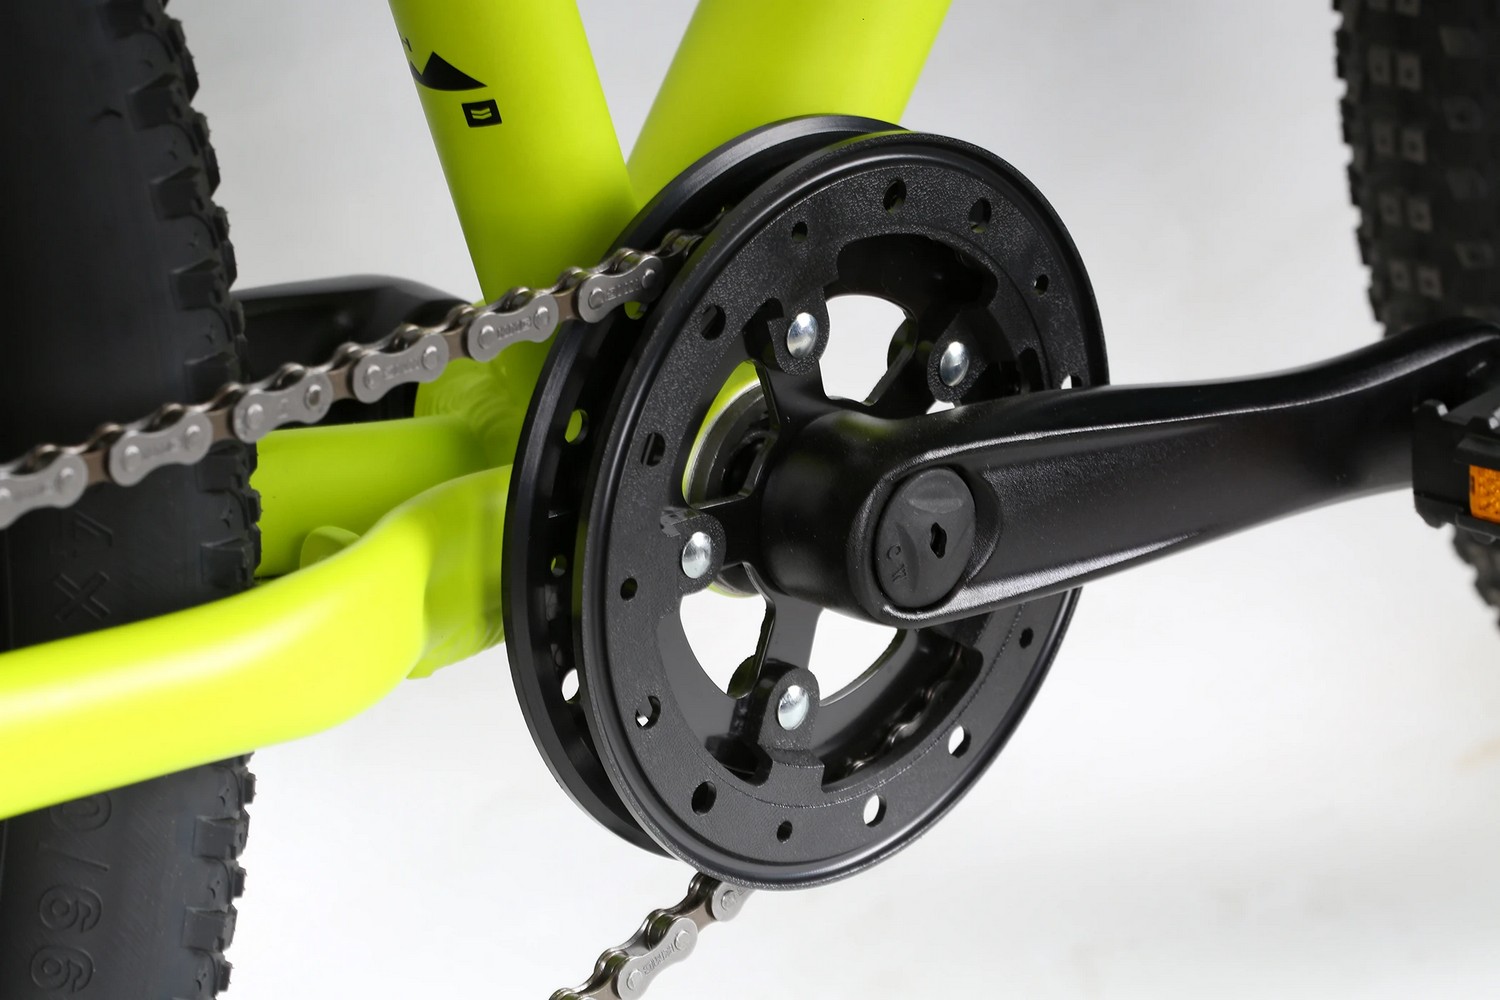 фото Подростковый велосипед haro flightline 24 plus, год 2021, цвет зеленый-желтый